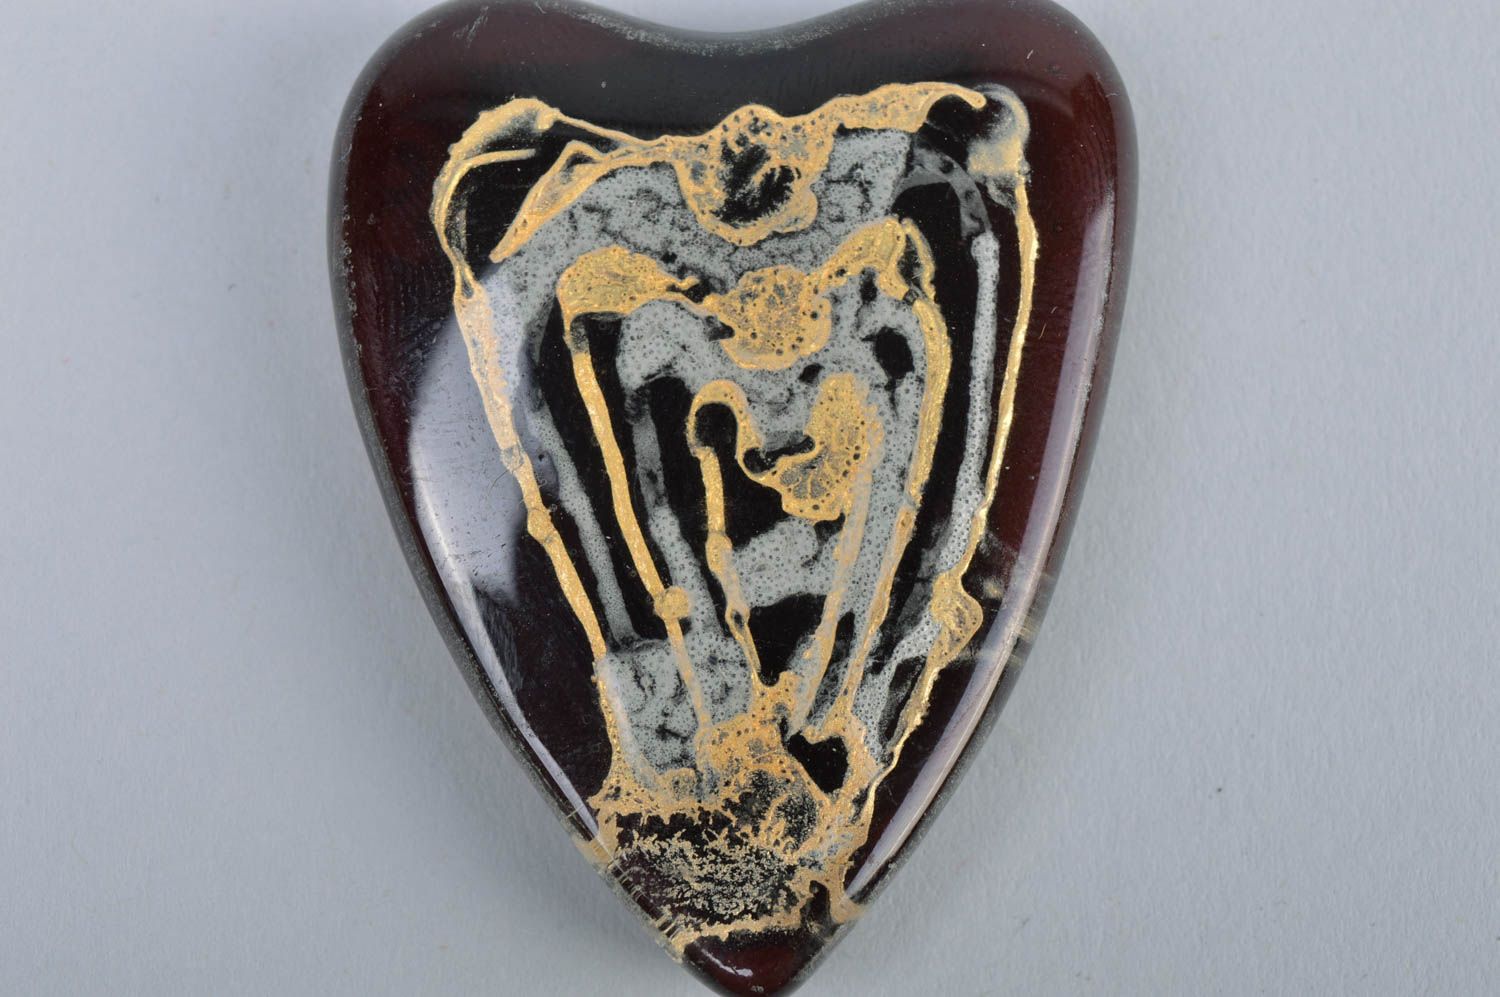 Handmade dark heart shaped designer fused glass fridge magnet for interior decor photo 4